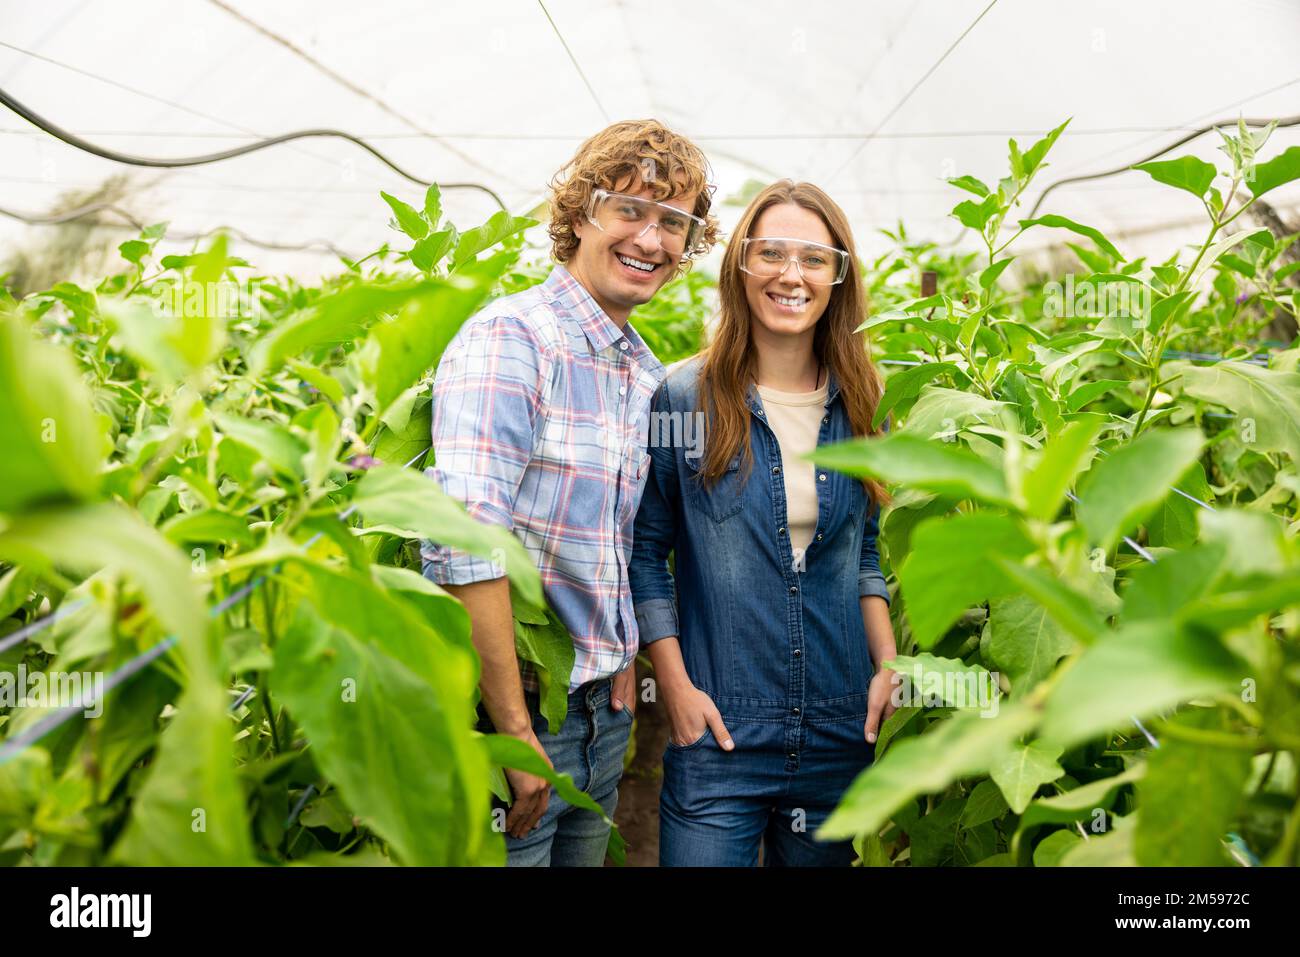 Deux agriculteurs joyeux dans des lunettes de protection debout dans la serre Banque D'Images